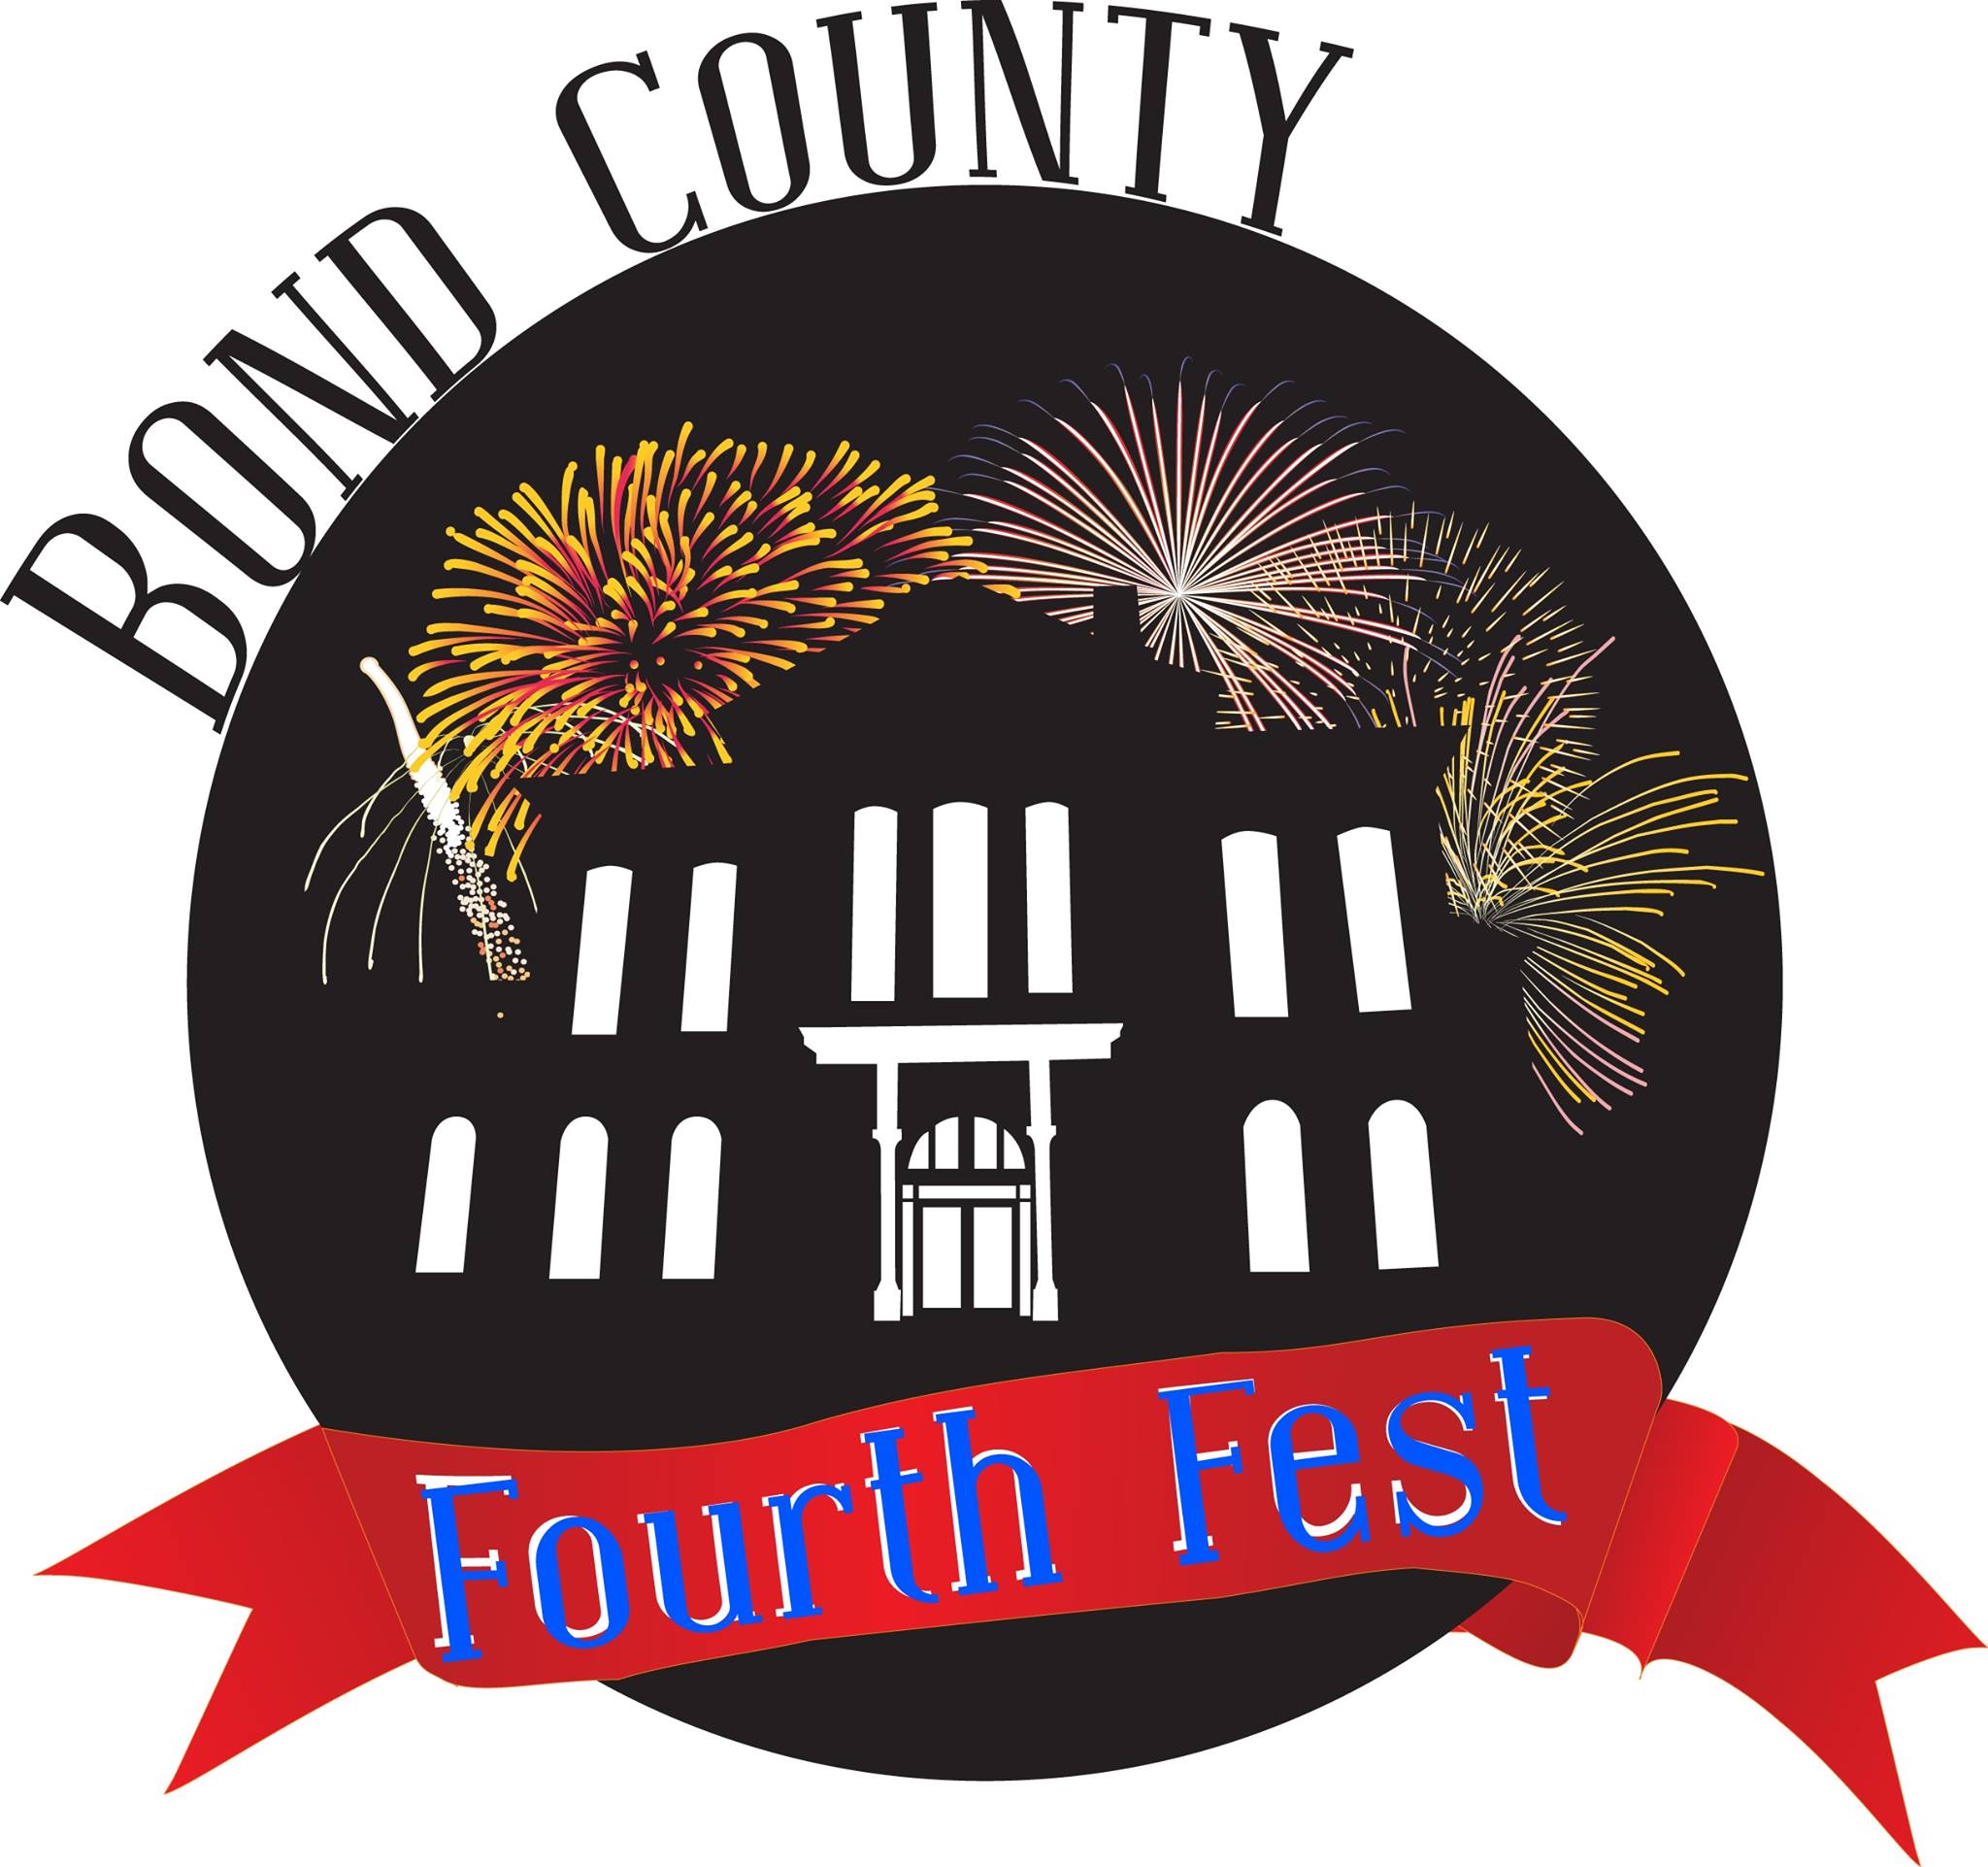 Bond County Fourth Fest